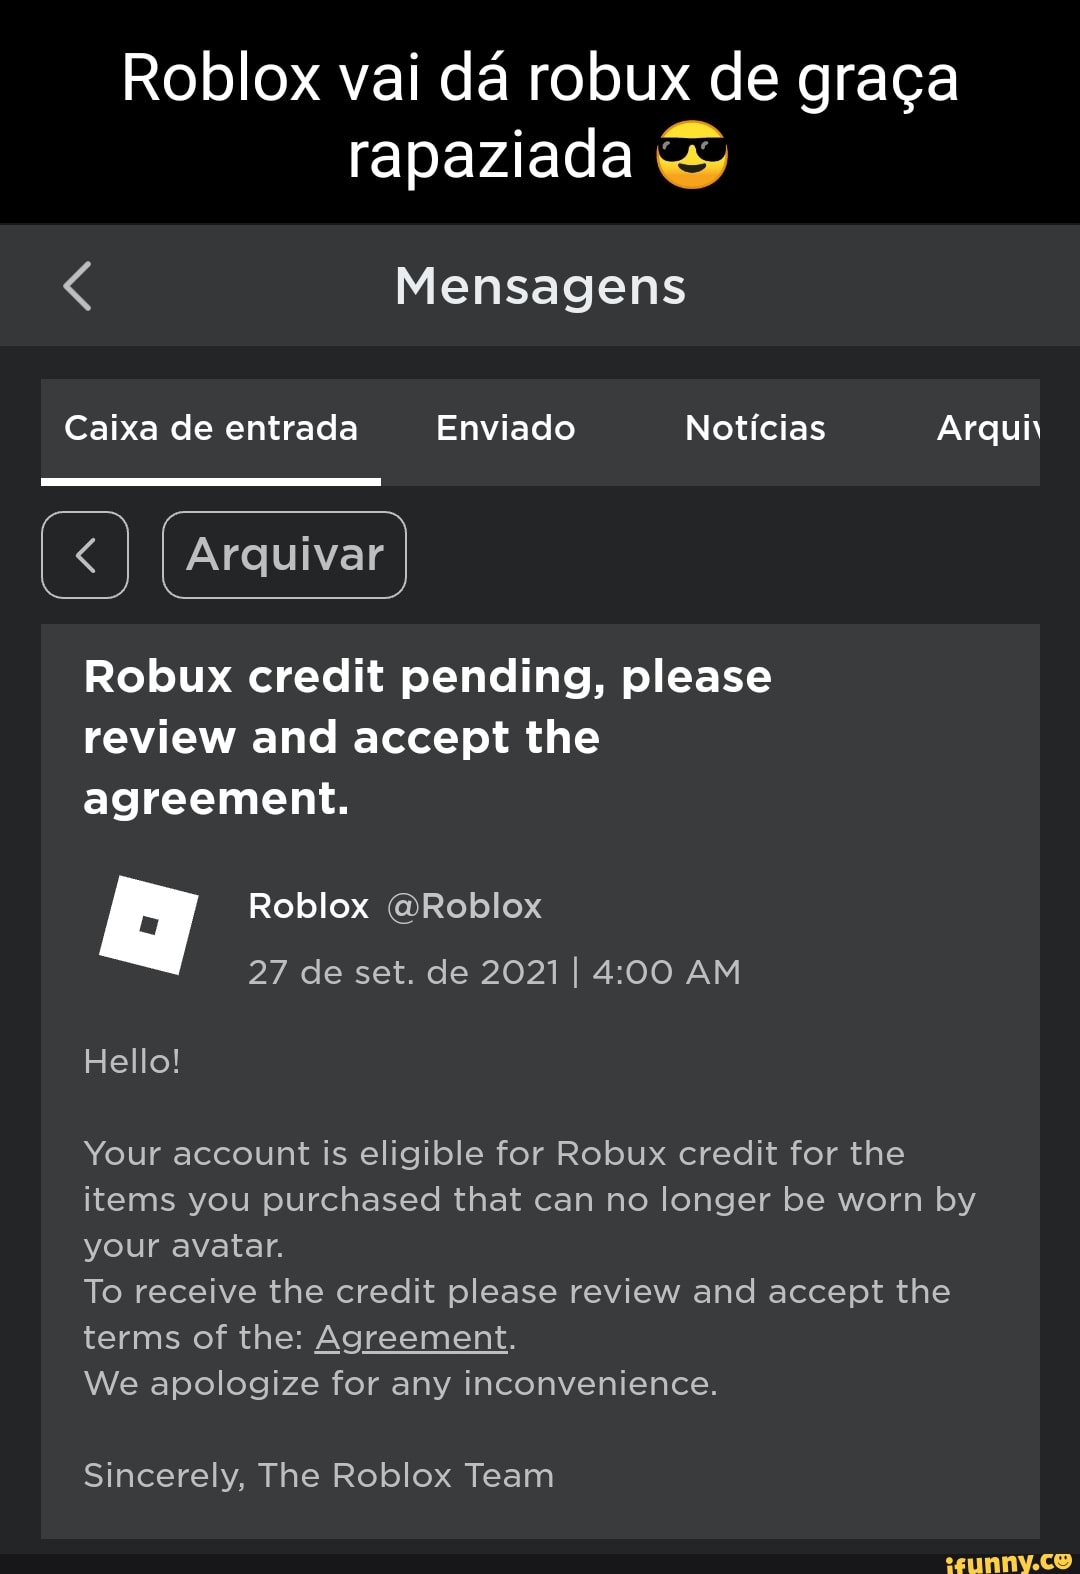 Roblox  Extensão com mais de 200 mil downloads rouba credenciais dos  usuários